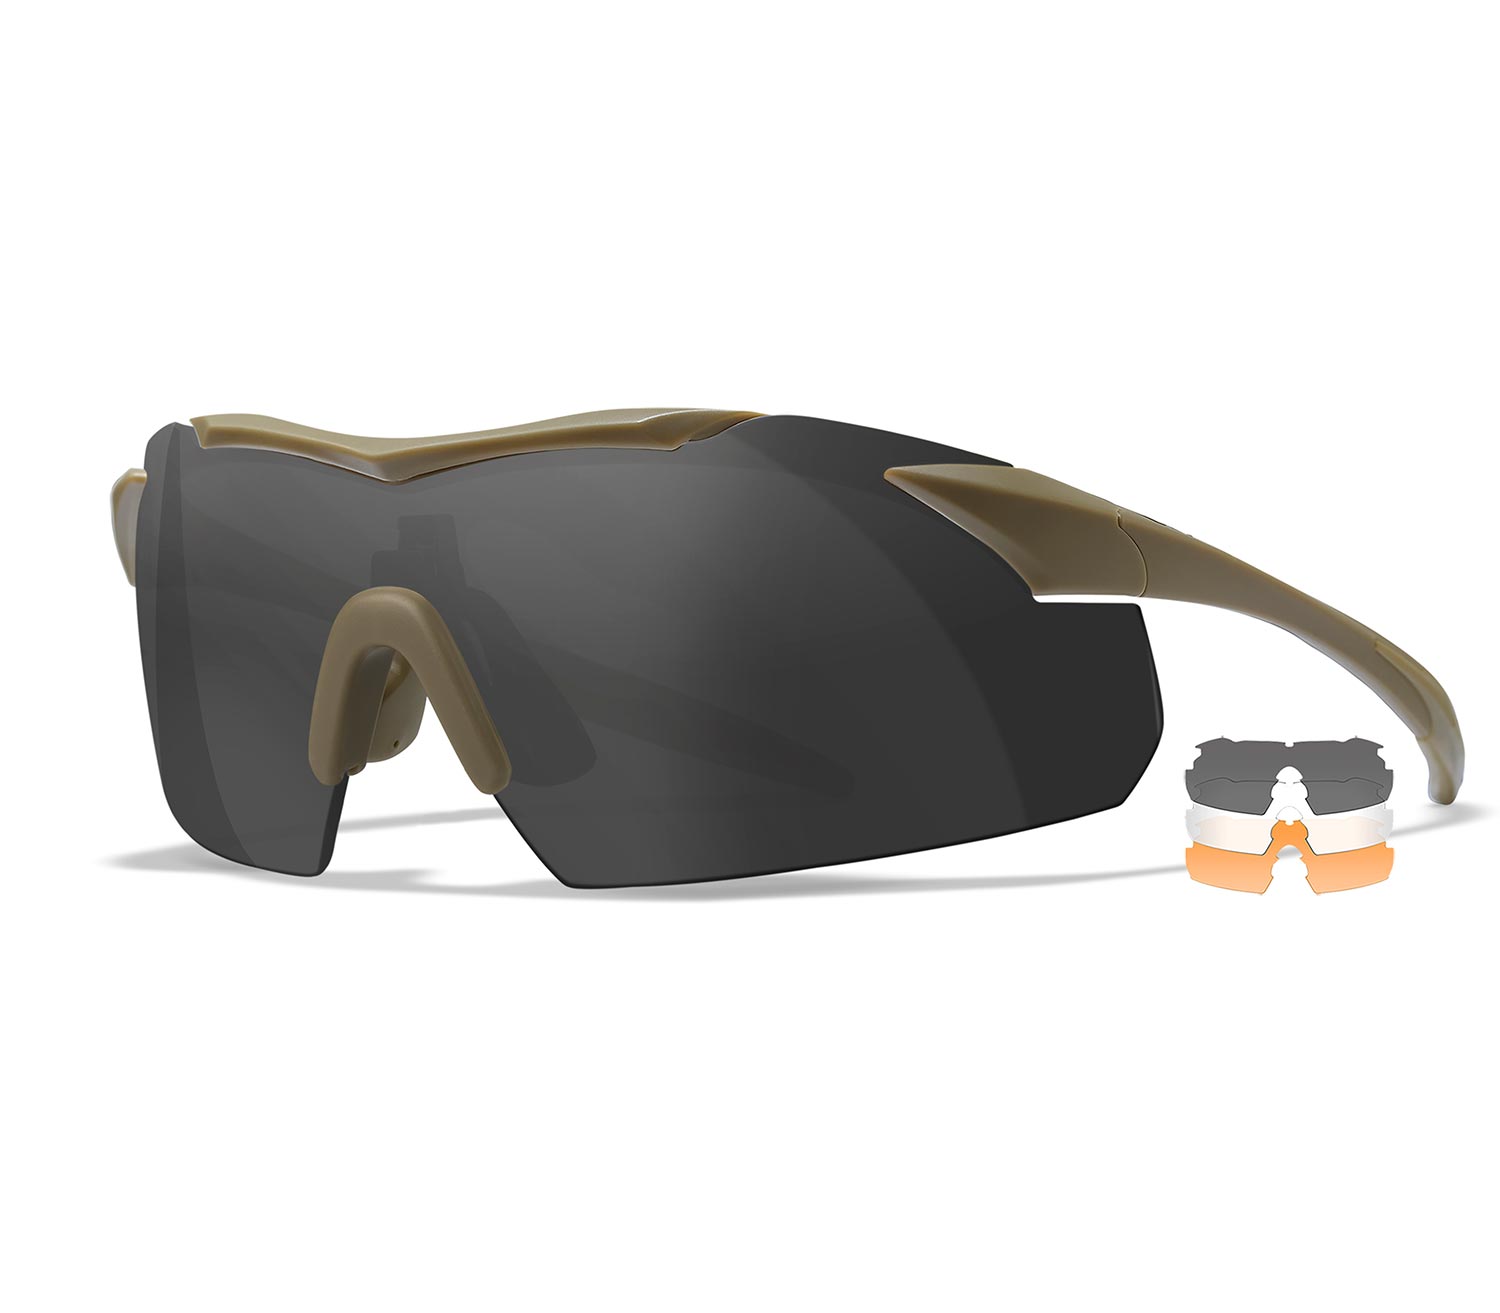 Gafas-Wiley-X-Vapor-2.5-Bronce-Smoke-Grey